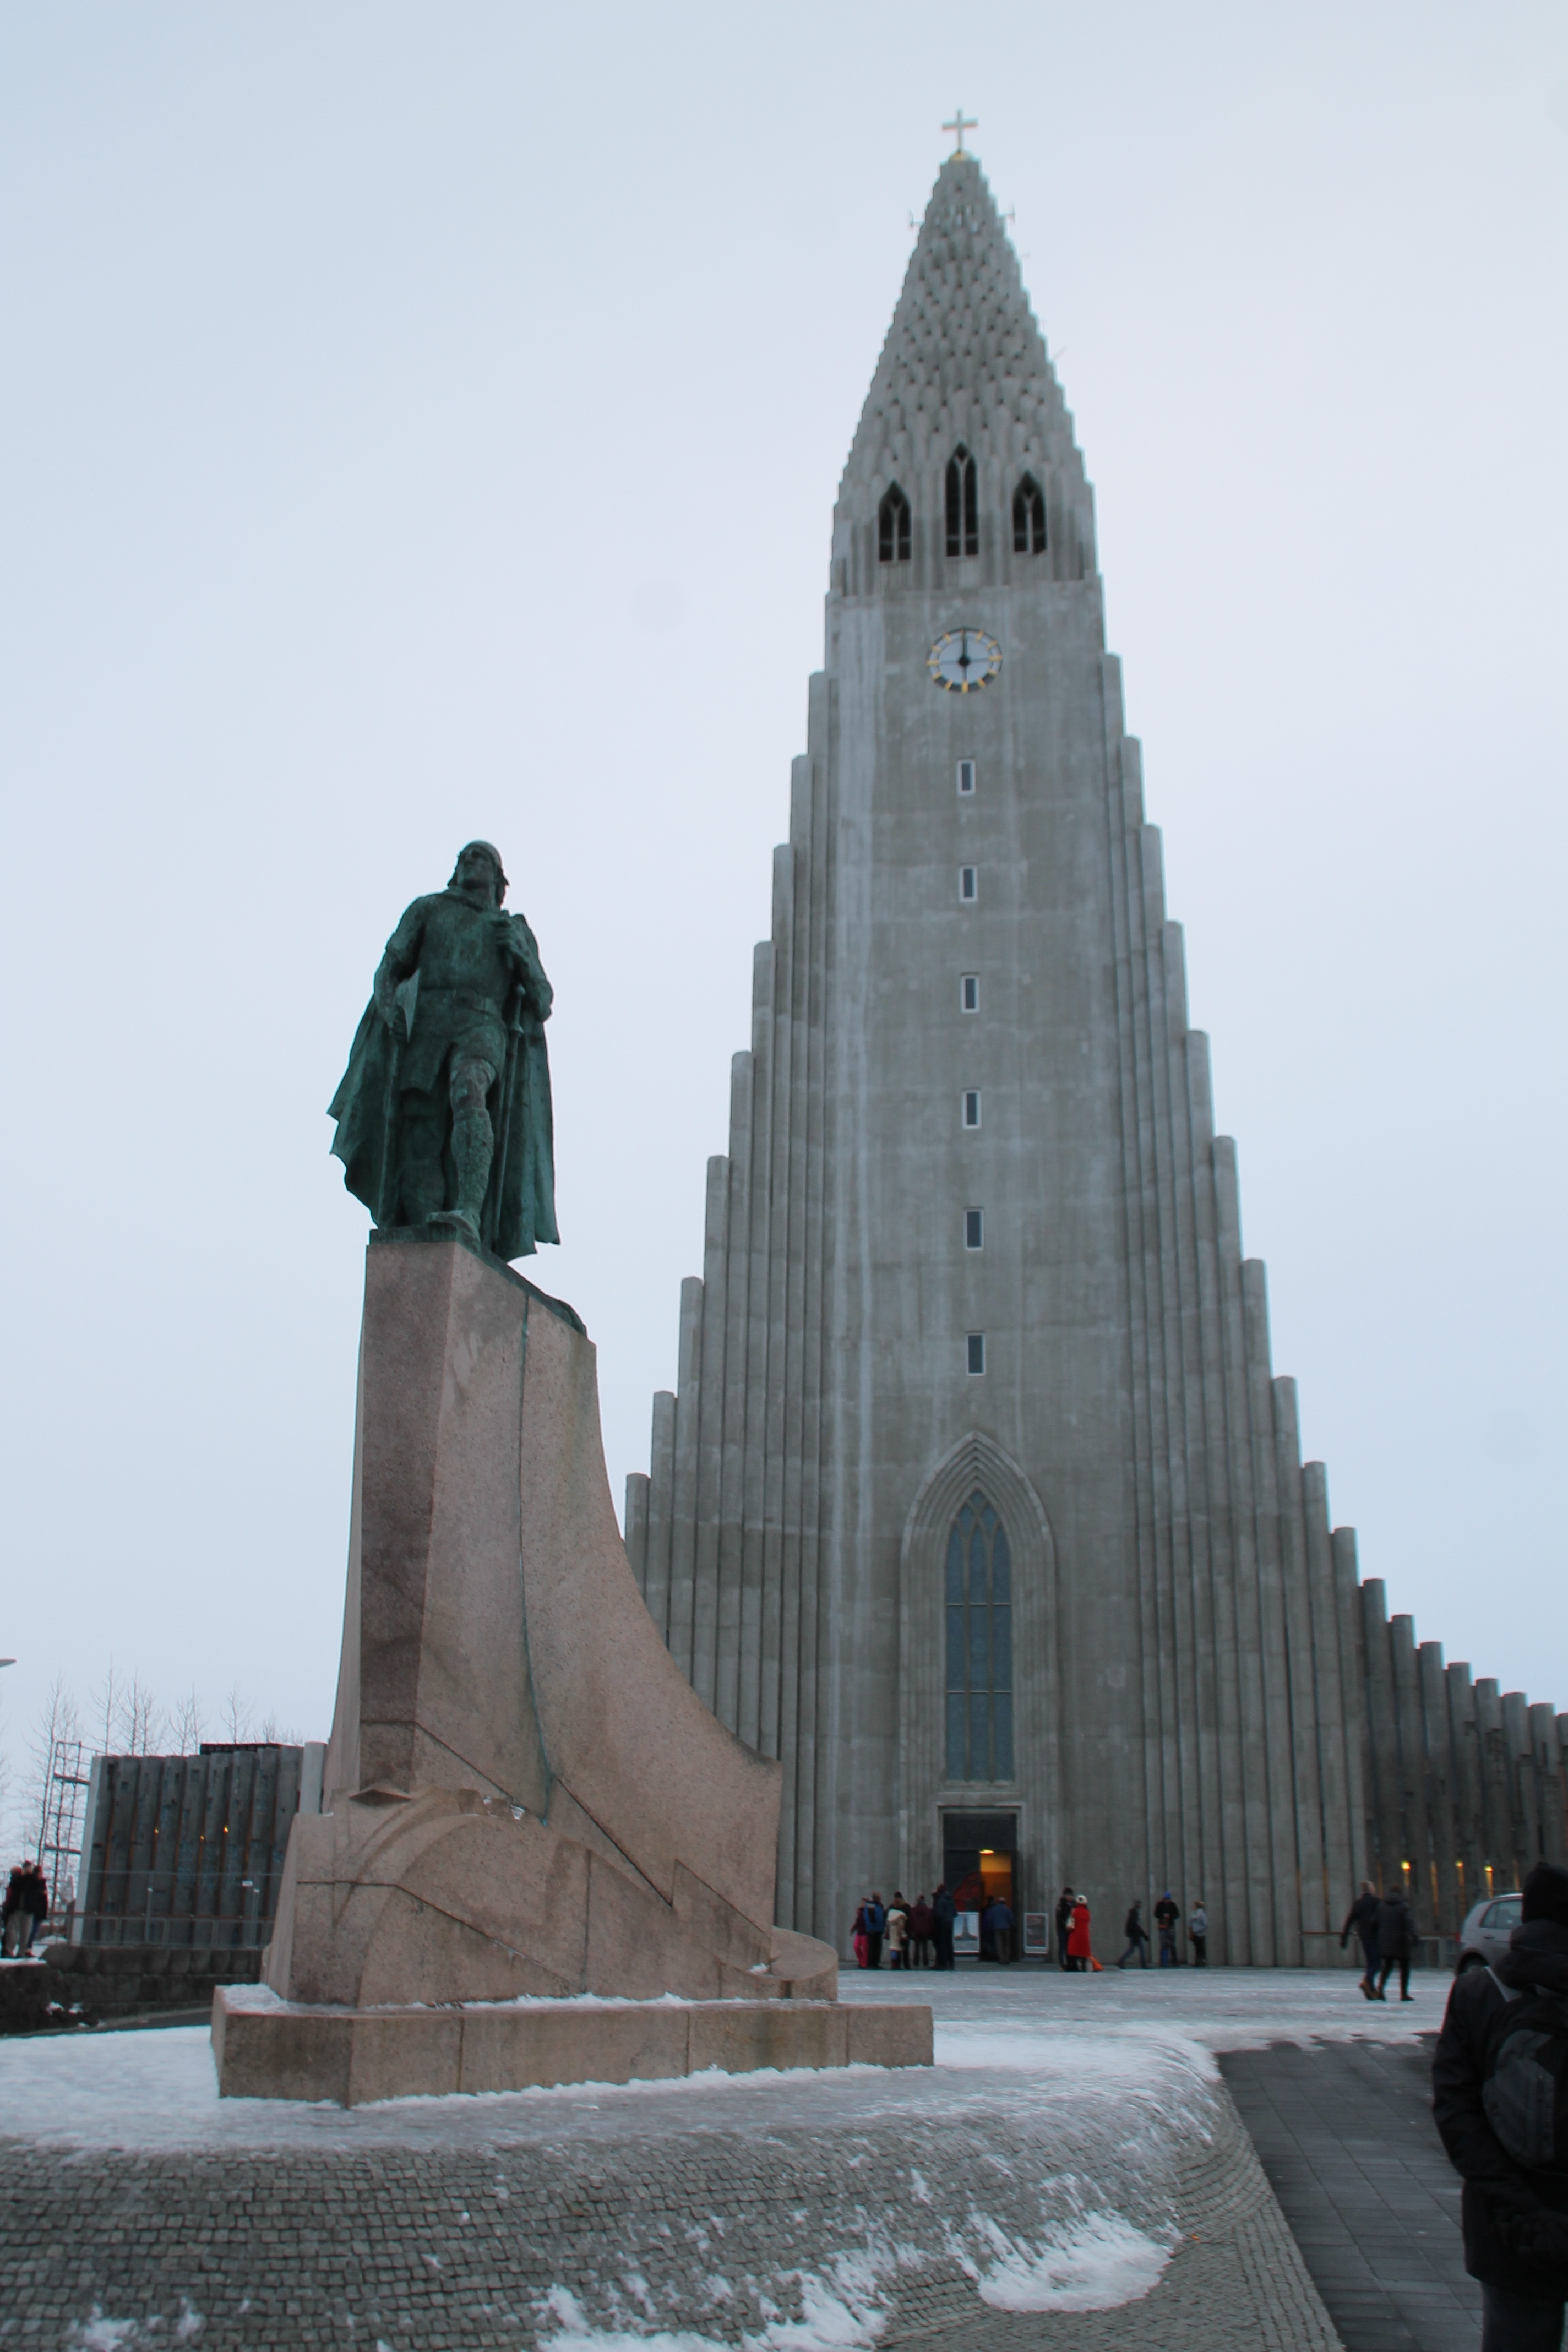 Reykjavik Church Iceland free image download